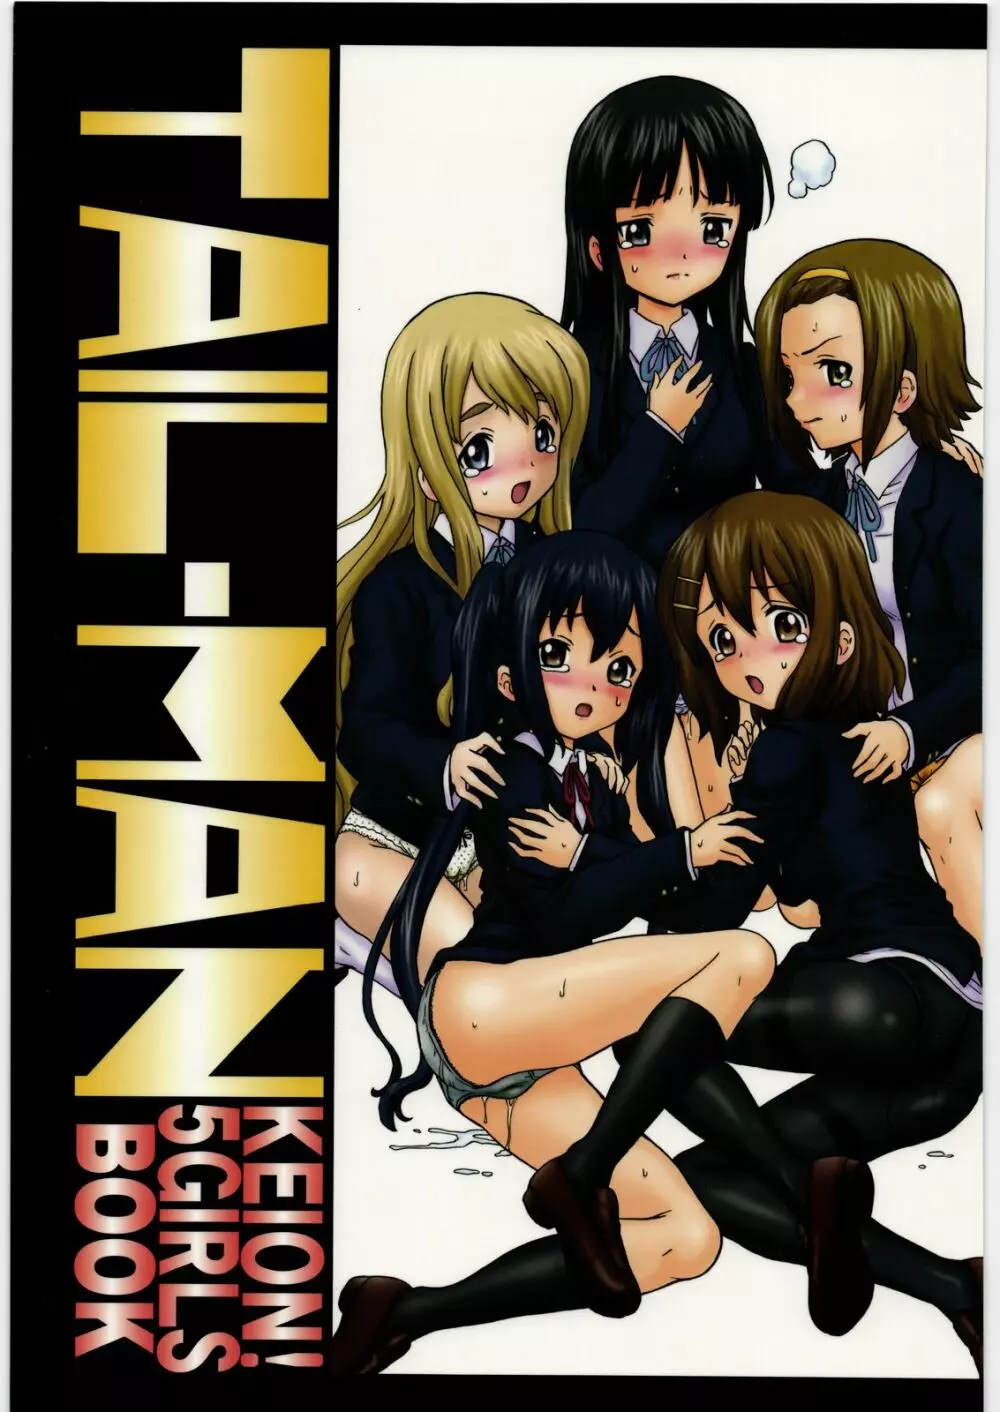 TAIL-MAN KEION! 5 GIRLS BOOK